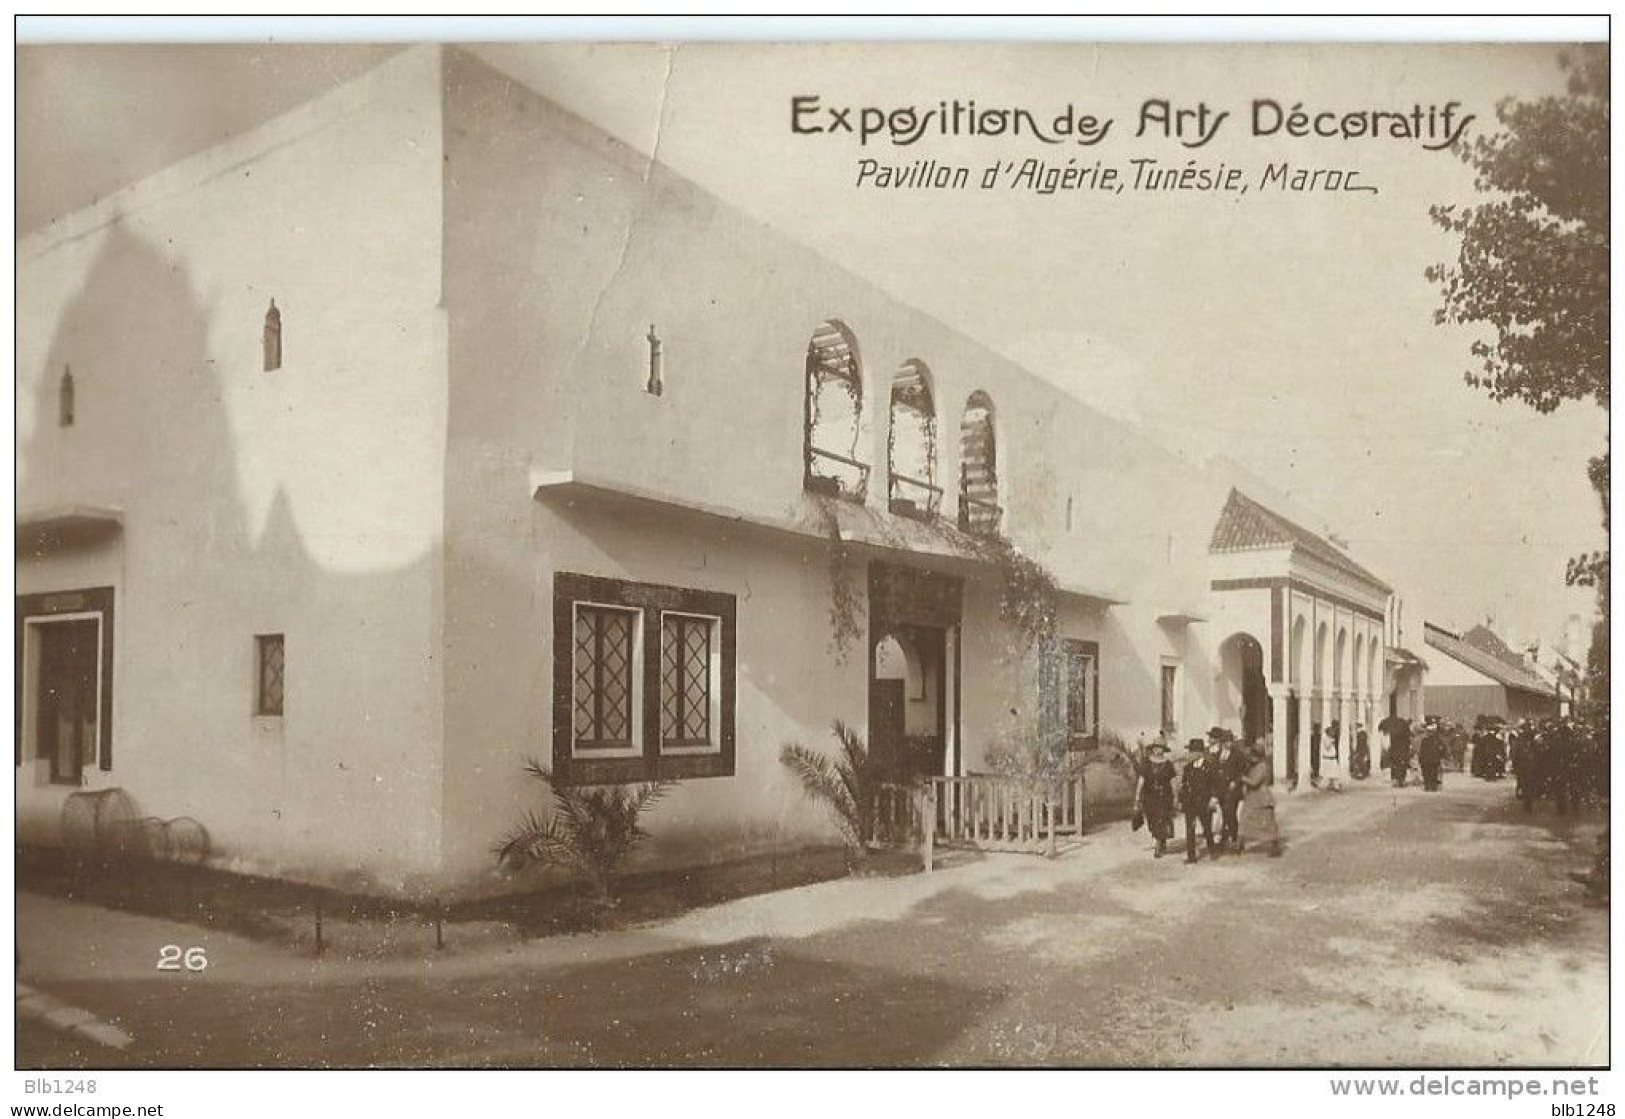 [75] Paris > Exposition Des Arts Decoratifs Pavillon D'Algerie, Tunisie Maroc - Ausstellungen